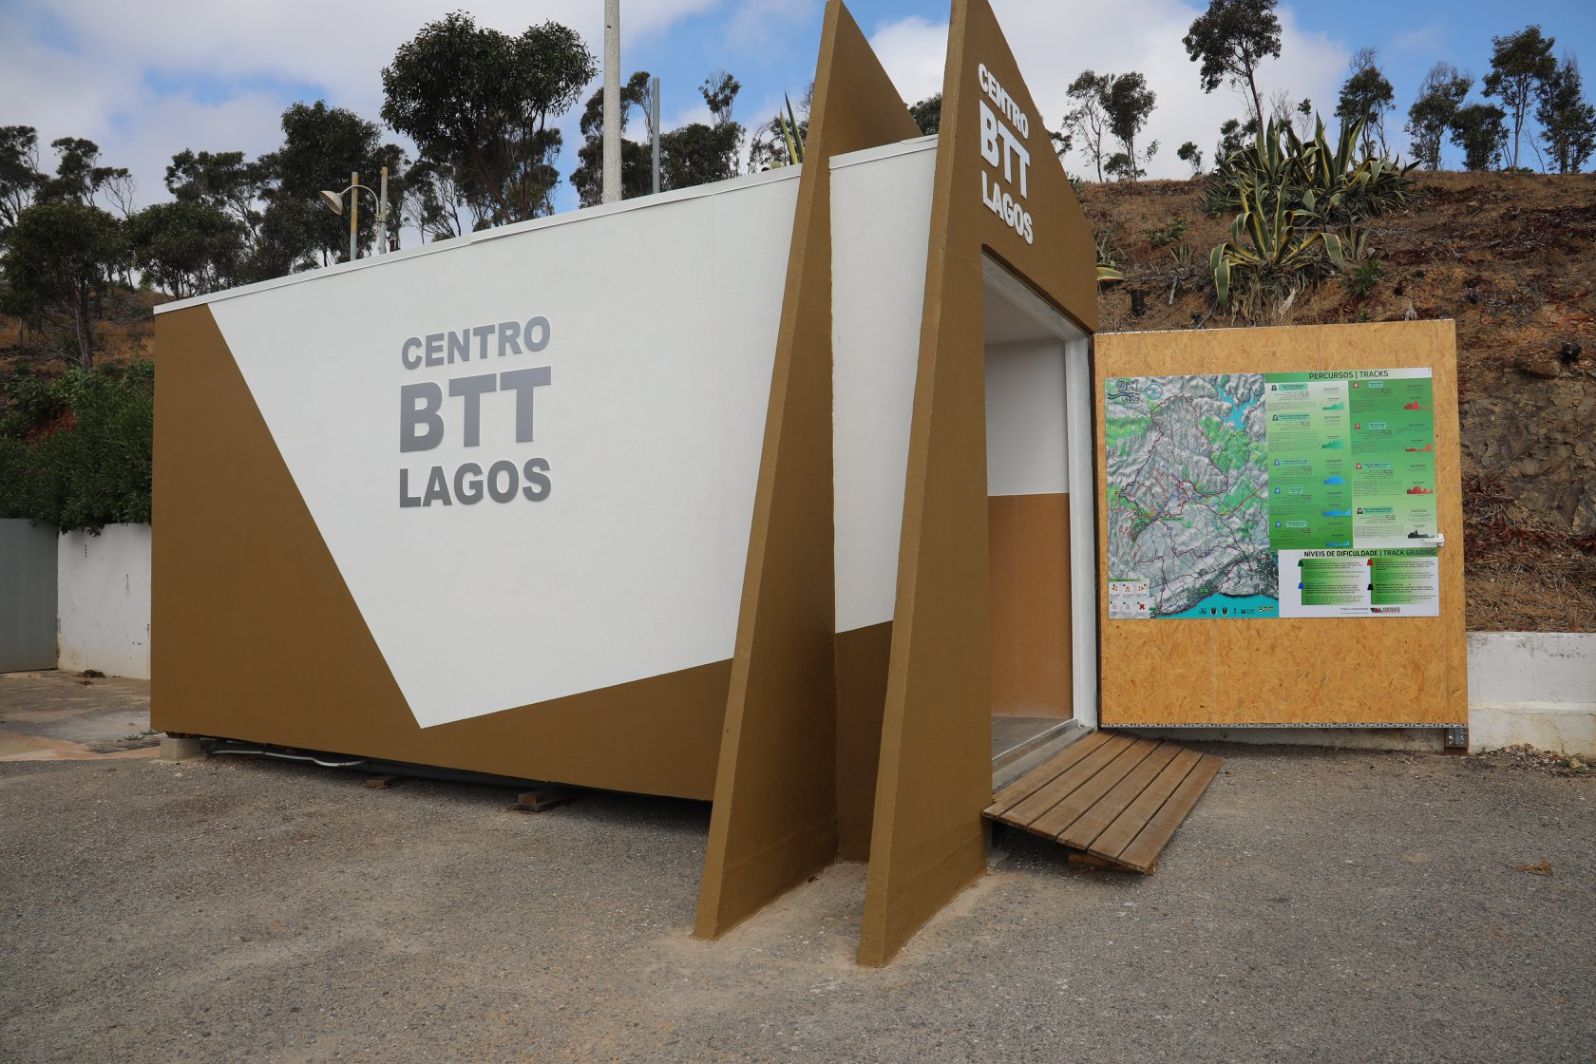 Centro de BTT reforça aposta do município de Lagos no desenvolvimento desportivo e no turismo de natureza